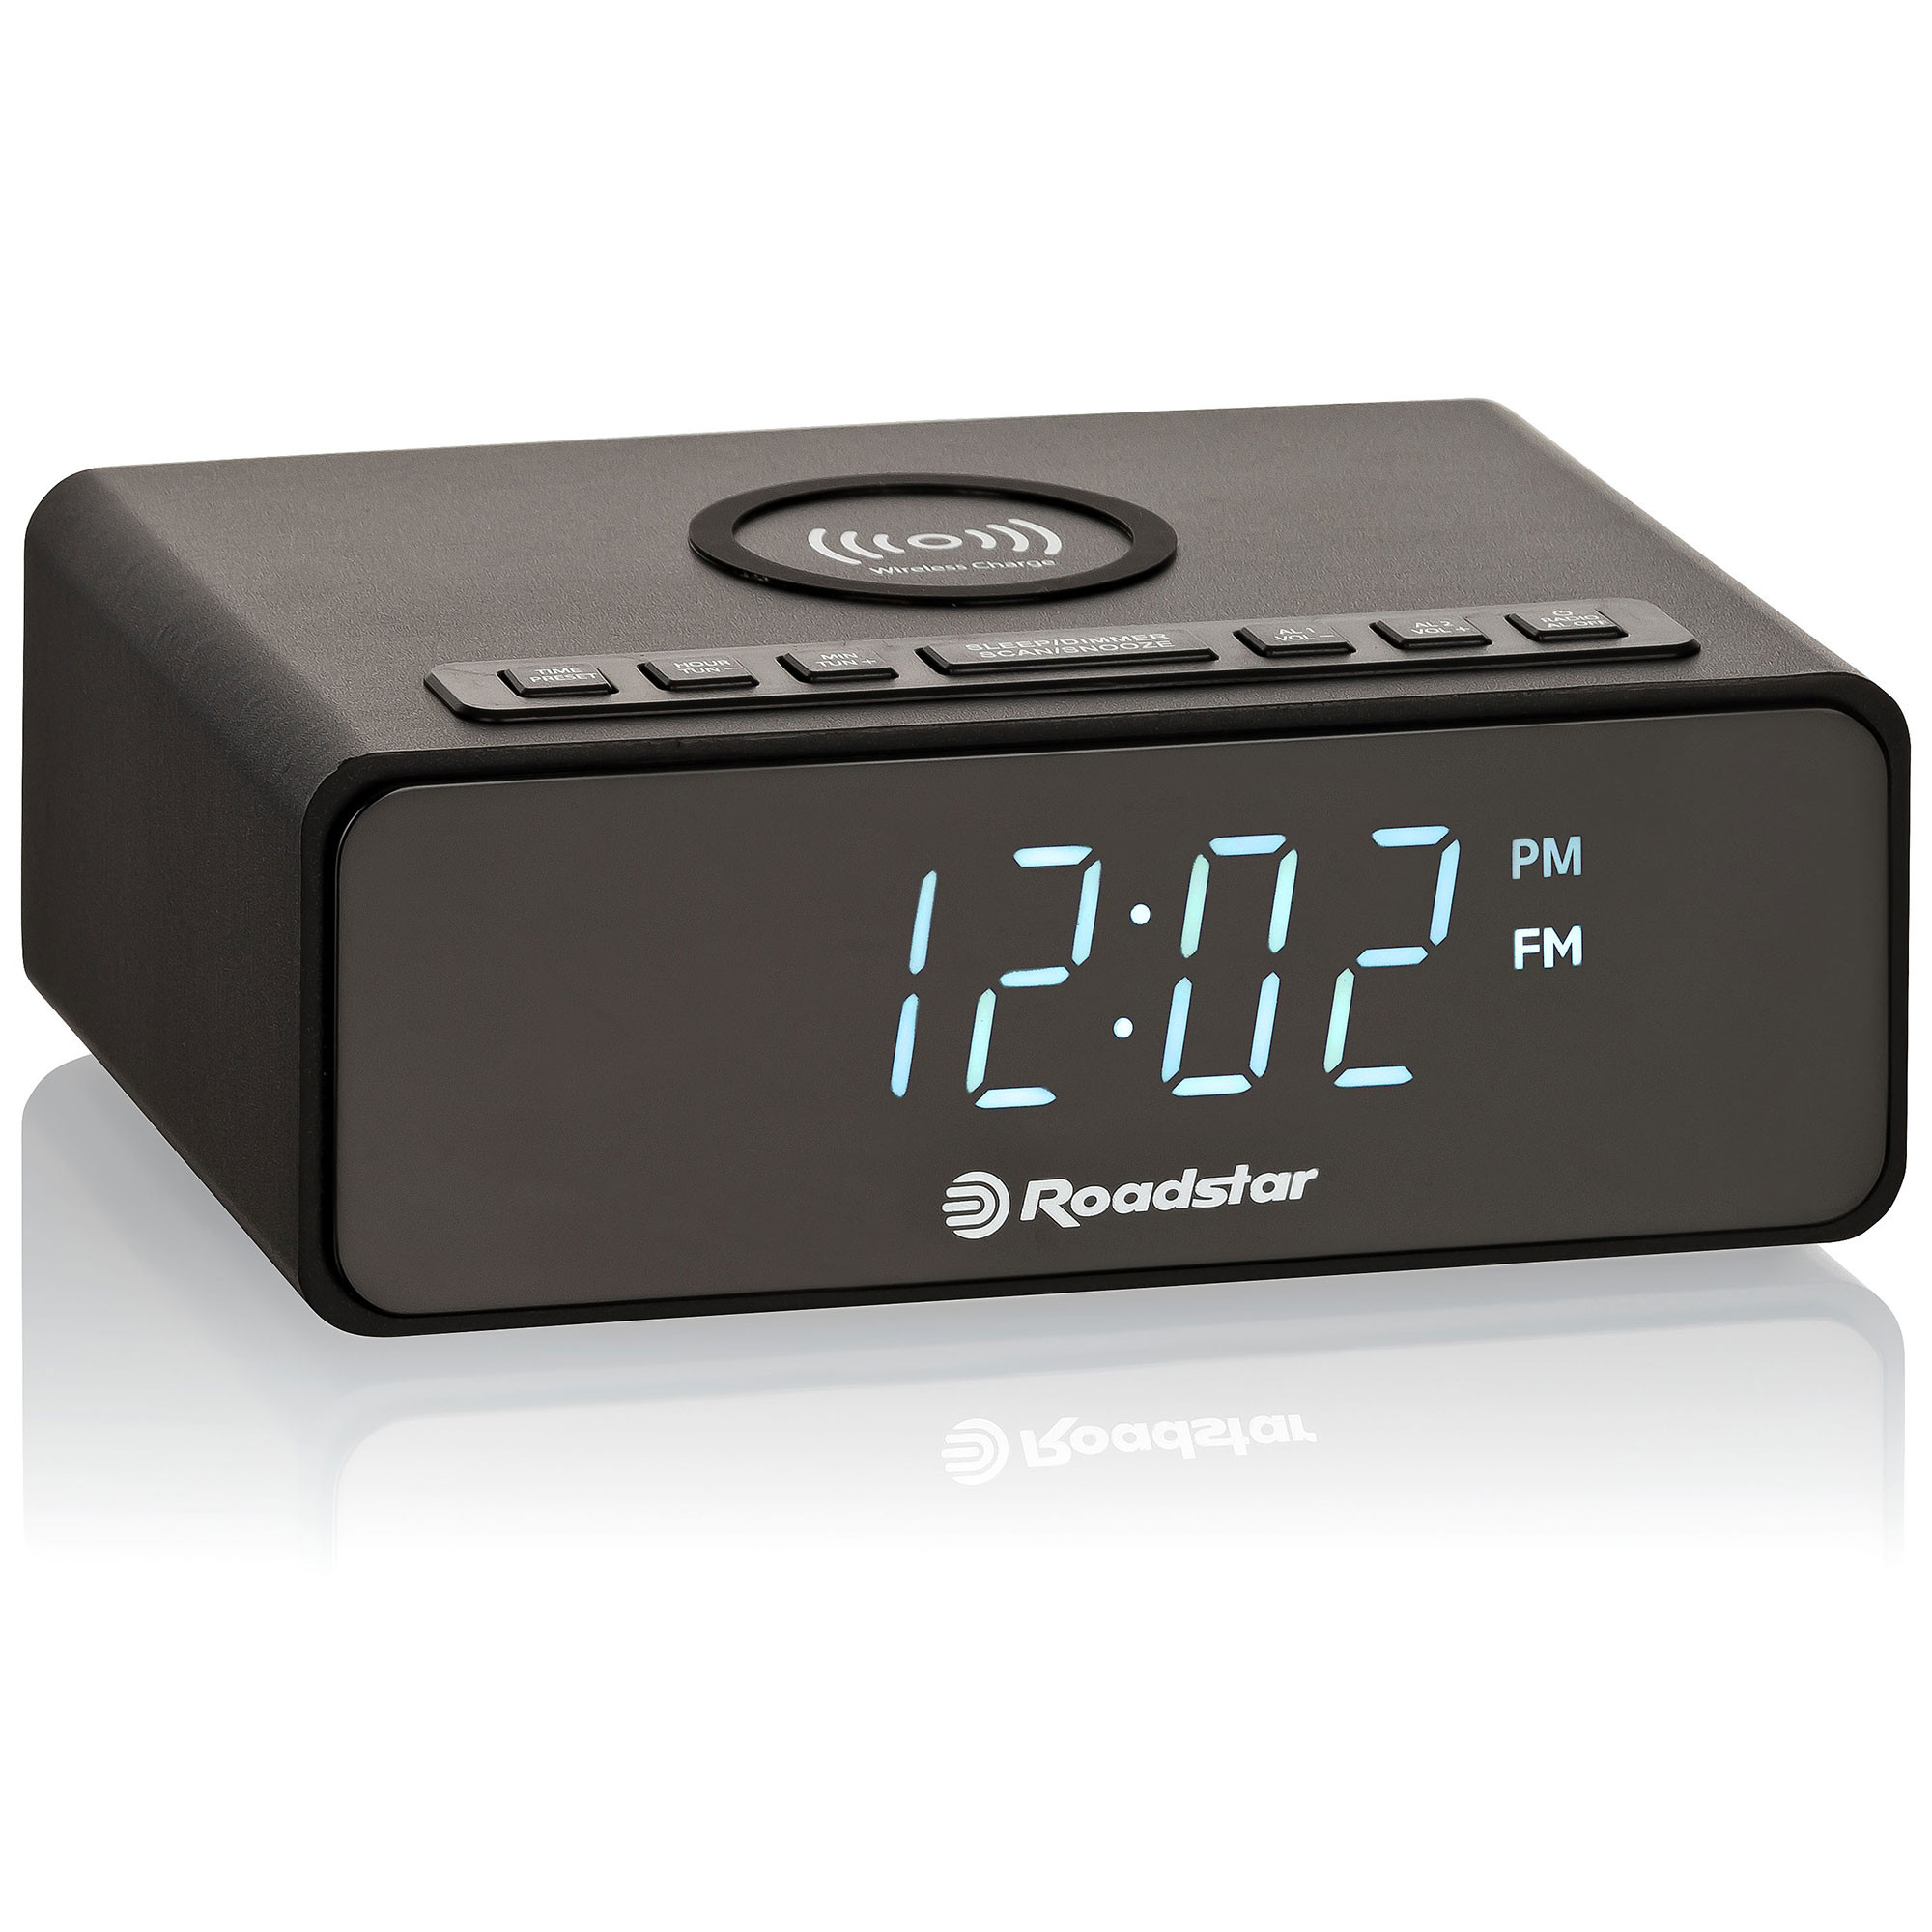 Roadstar CLR-700QI Radio Reloj Despertador PLL FM, Cargador